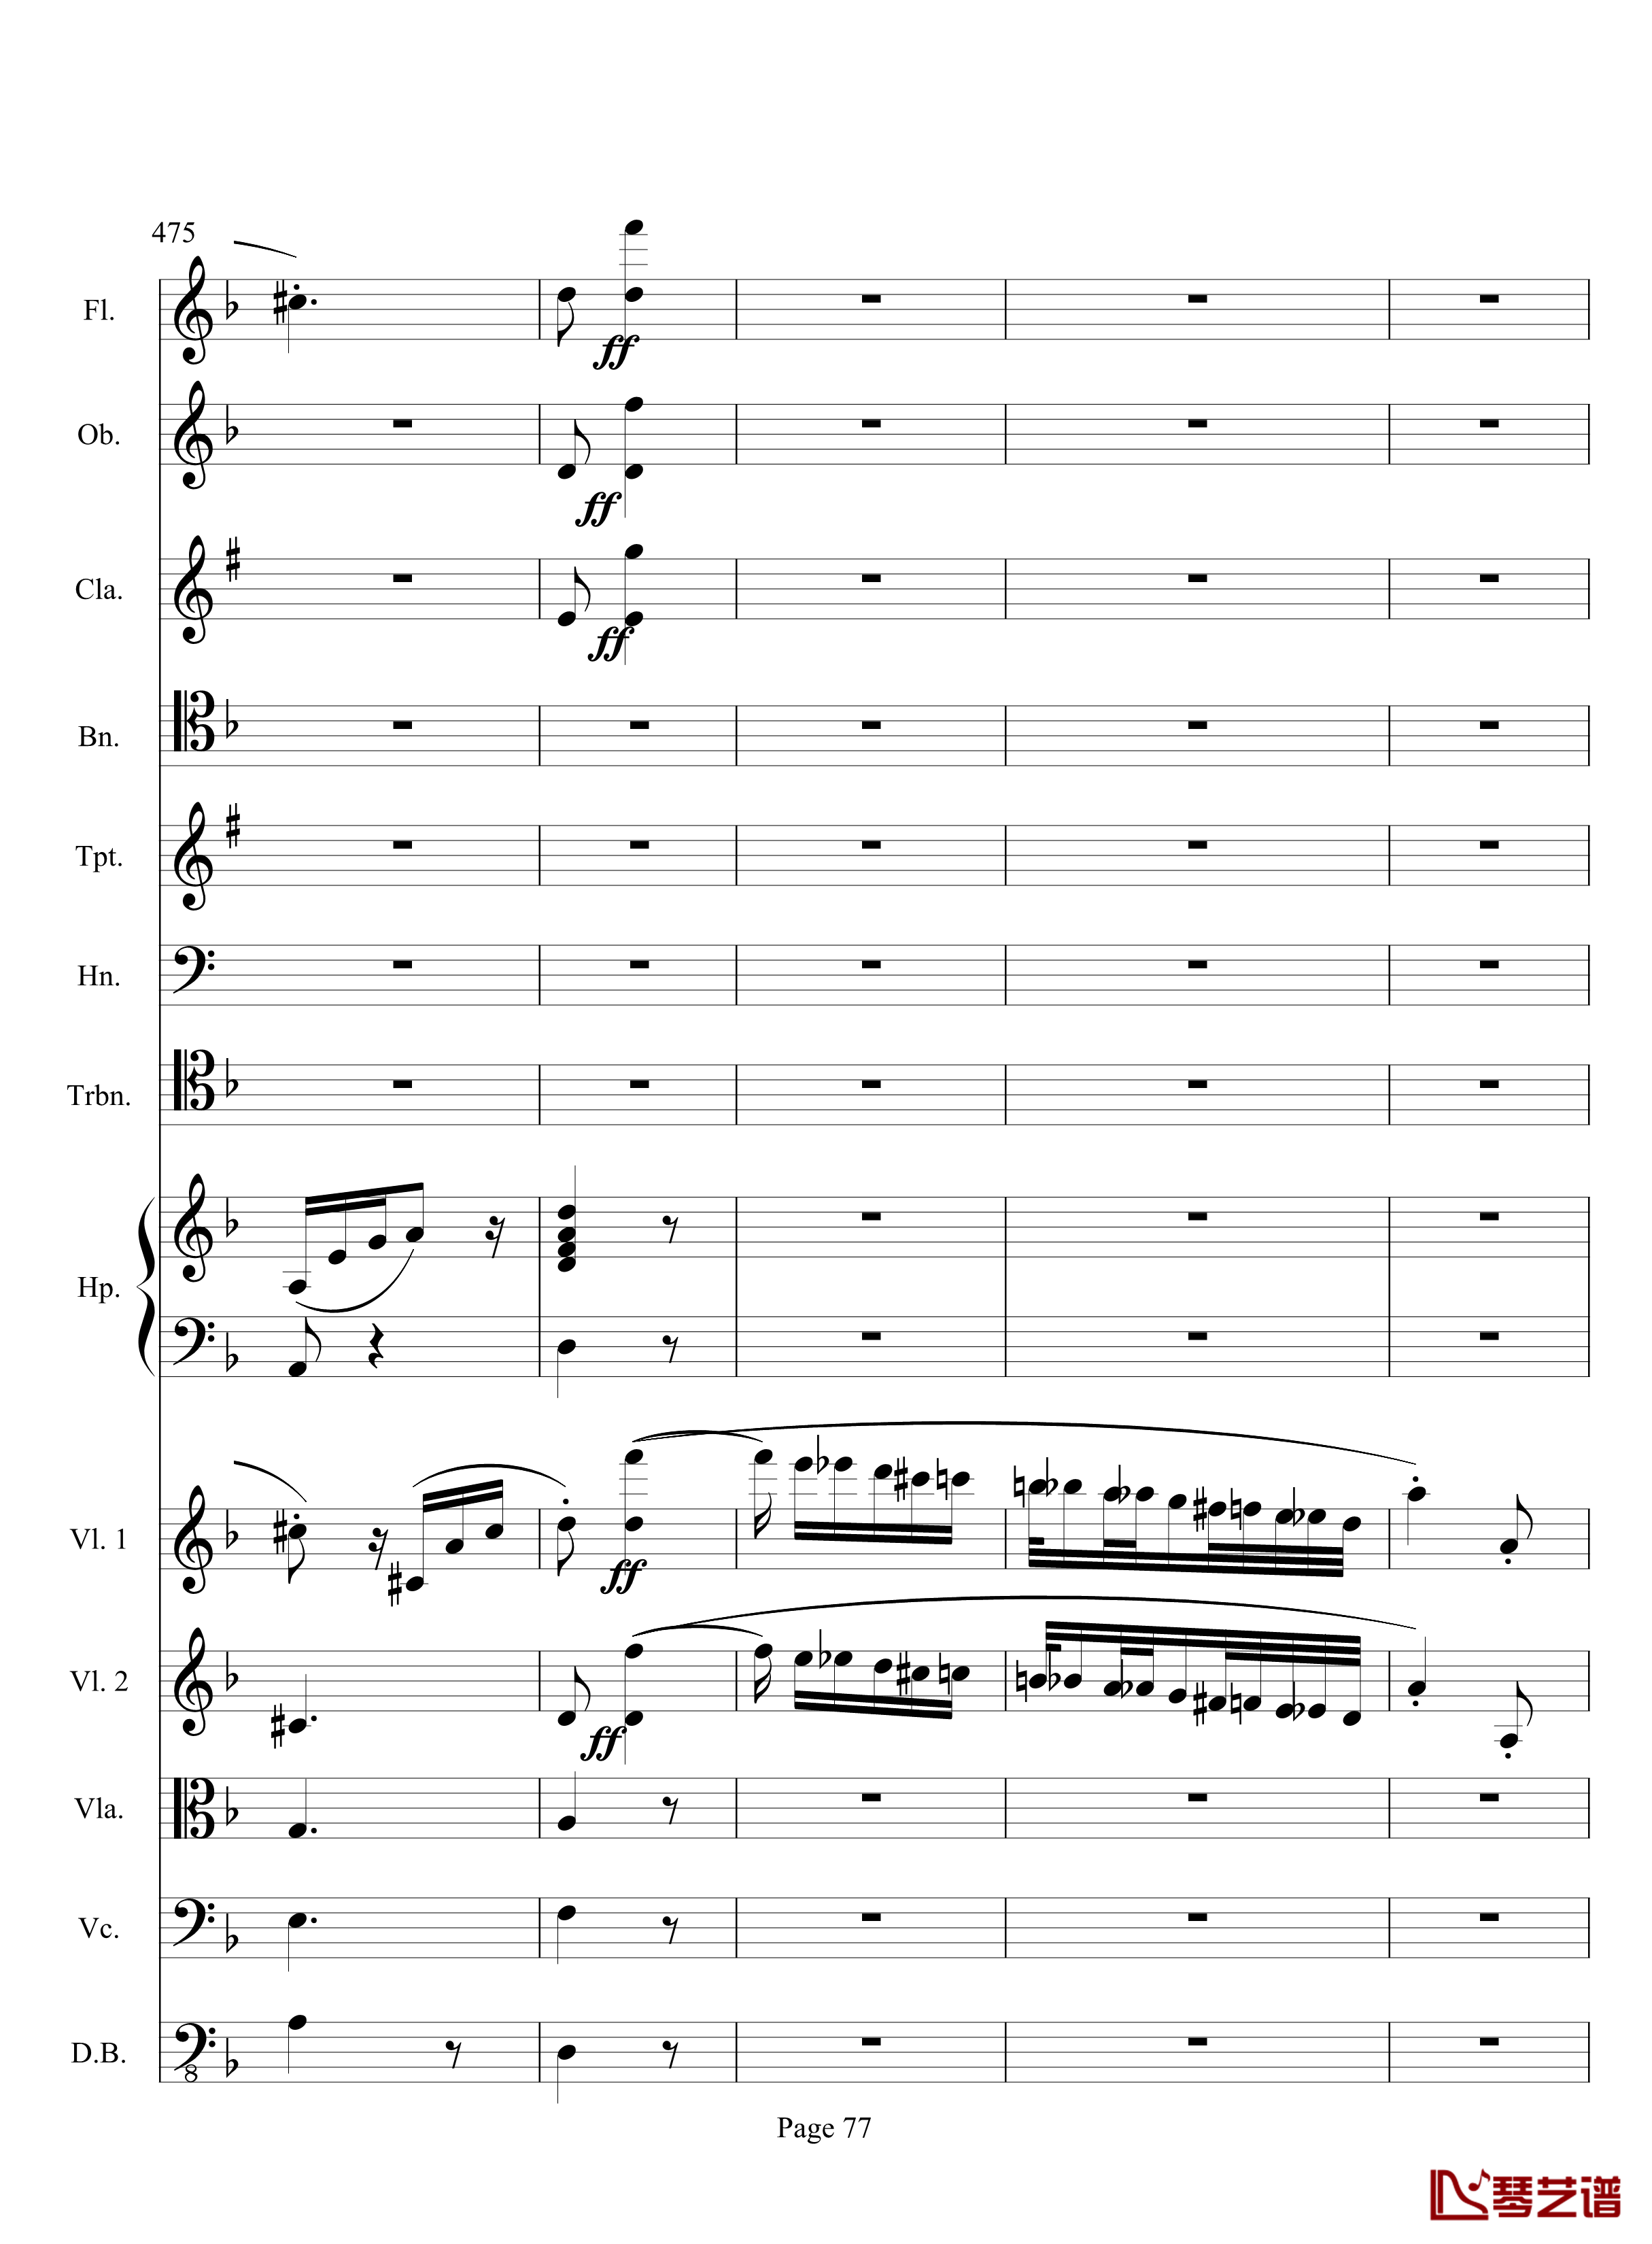 奏鸣曲之交响钢琴谱-第17首-Ⅲ-贝多芬-beethoven77